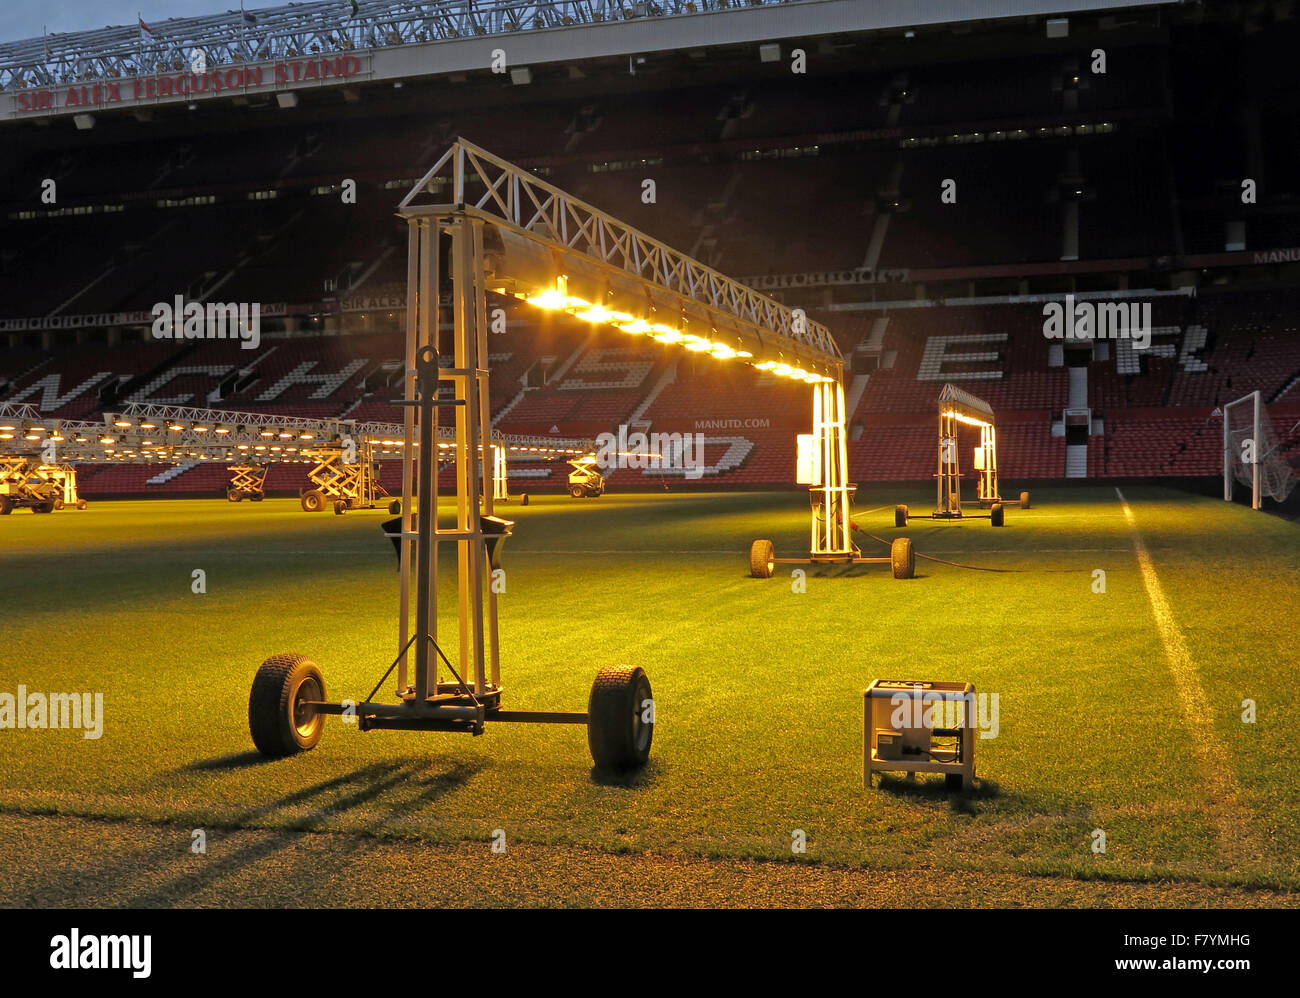 Garder les lumières emplacements d'herbe en été dans des profondeurs de l'hiver,Old Trafford, Manchester, Angleterre, Royaume-Uni Banque D'Images